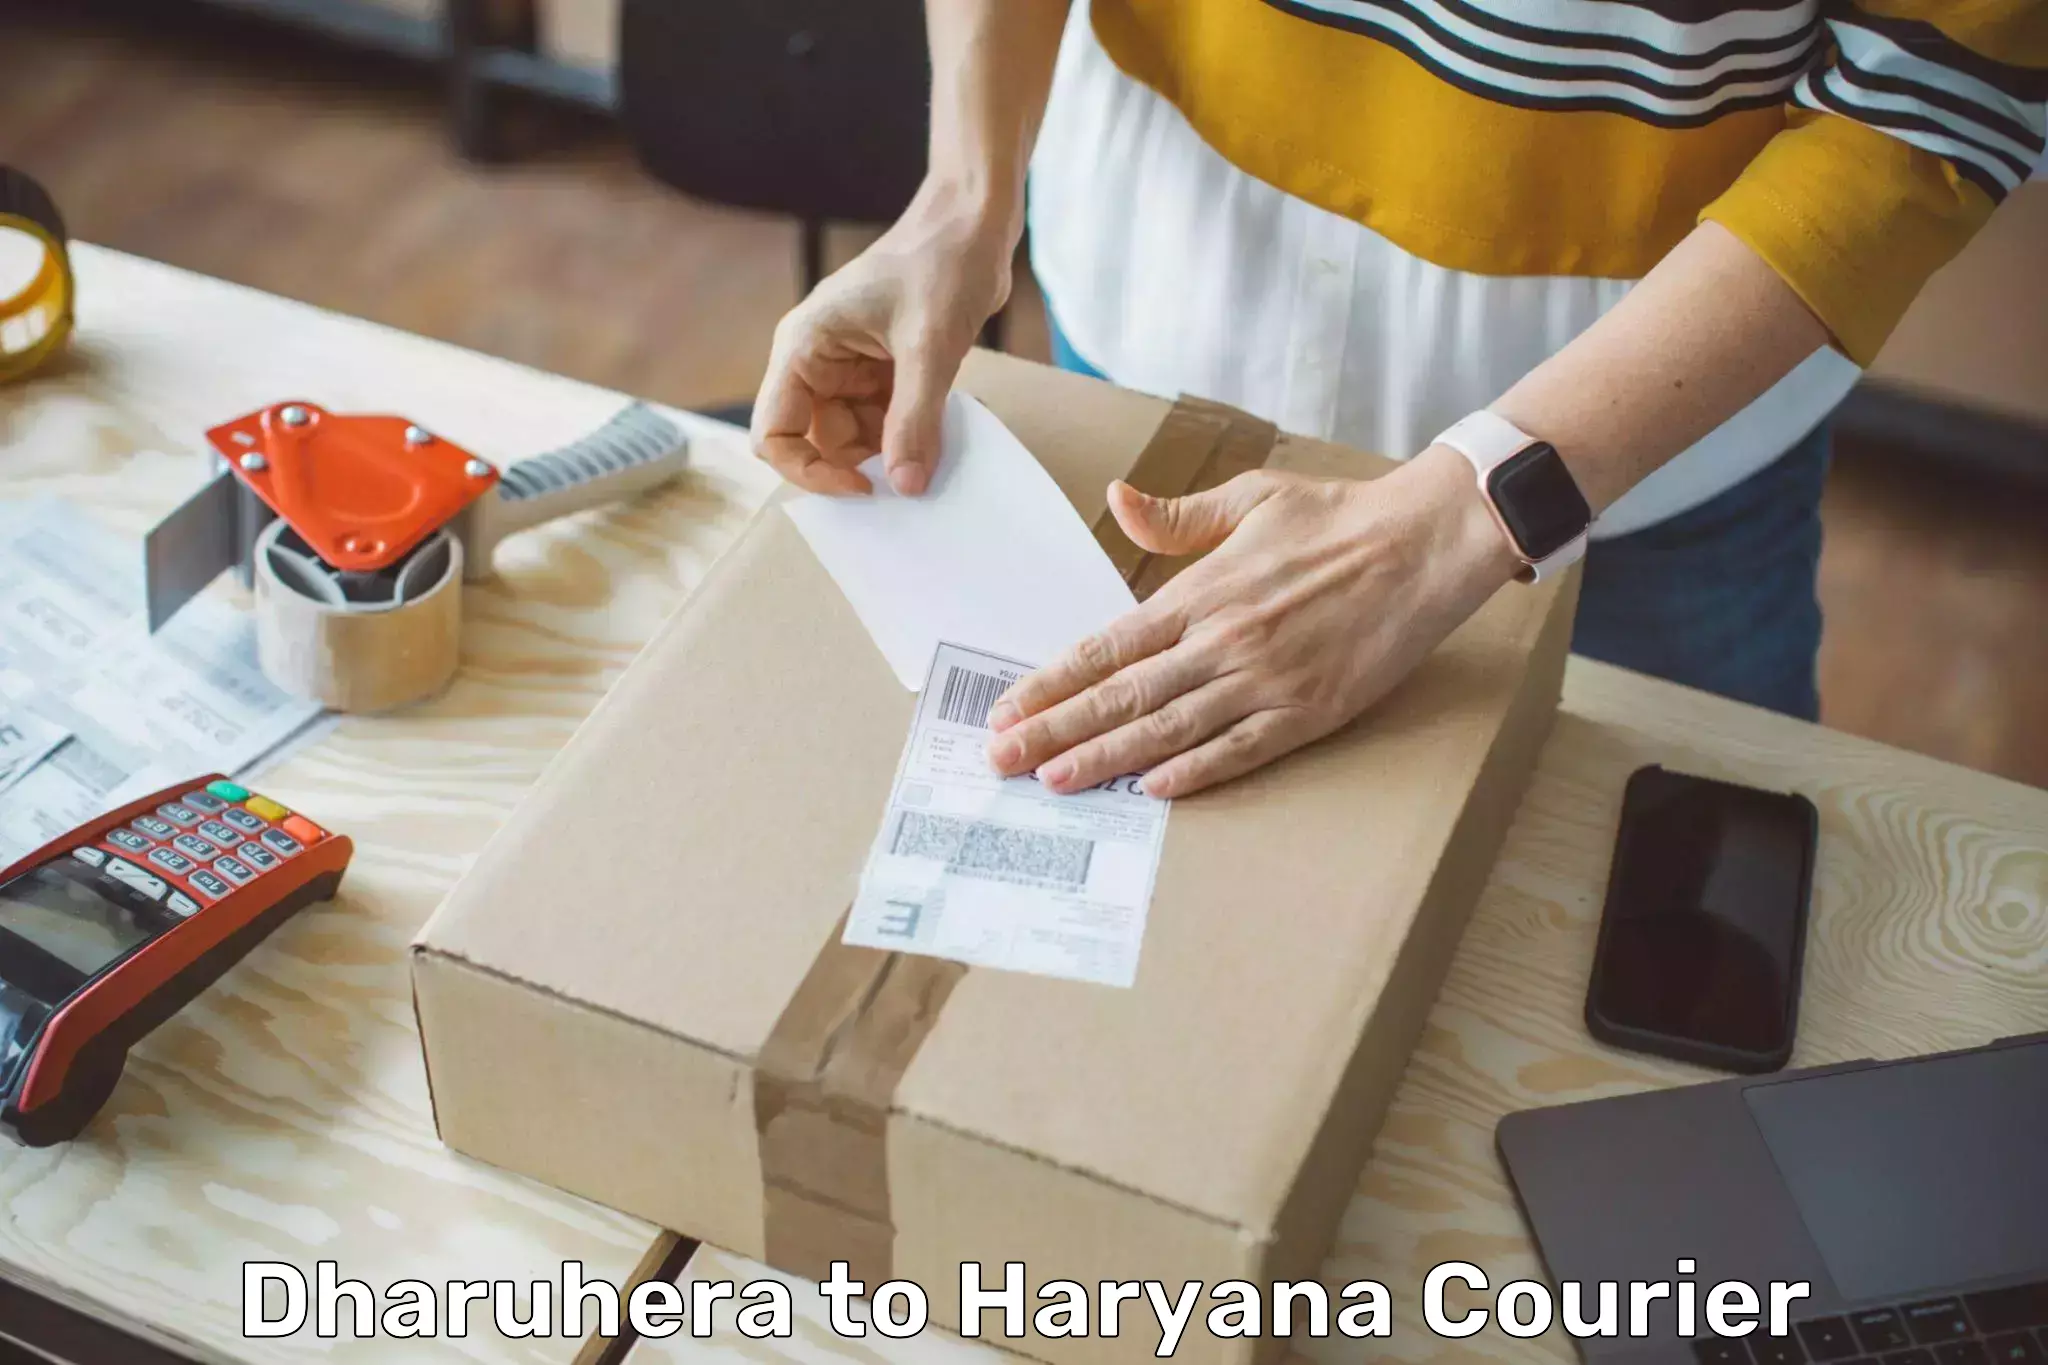 International parcel service Dharuhera to Haryana